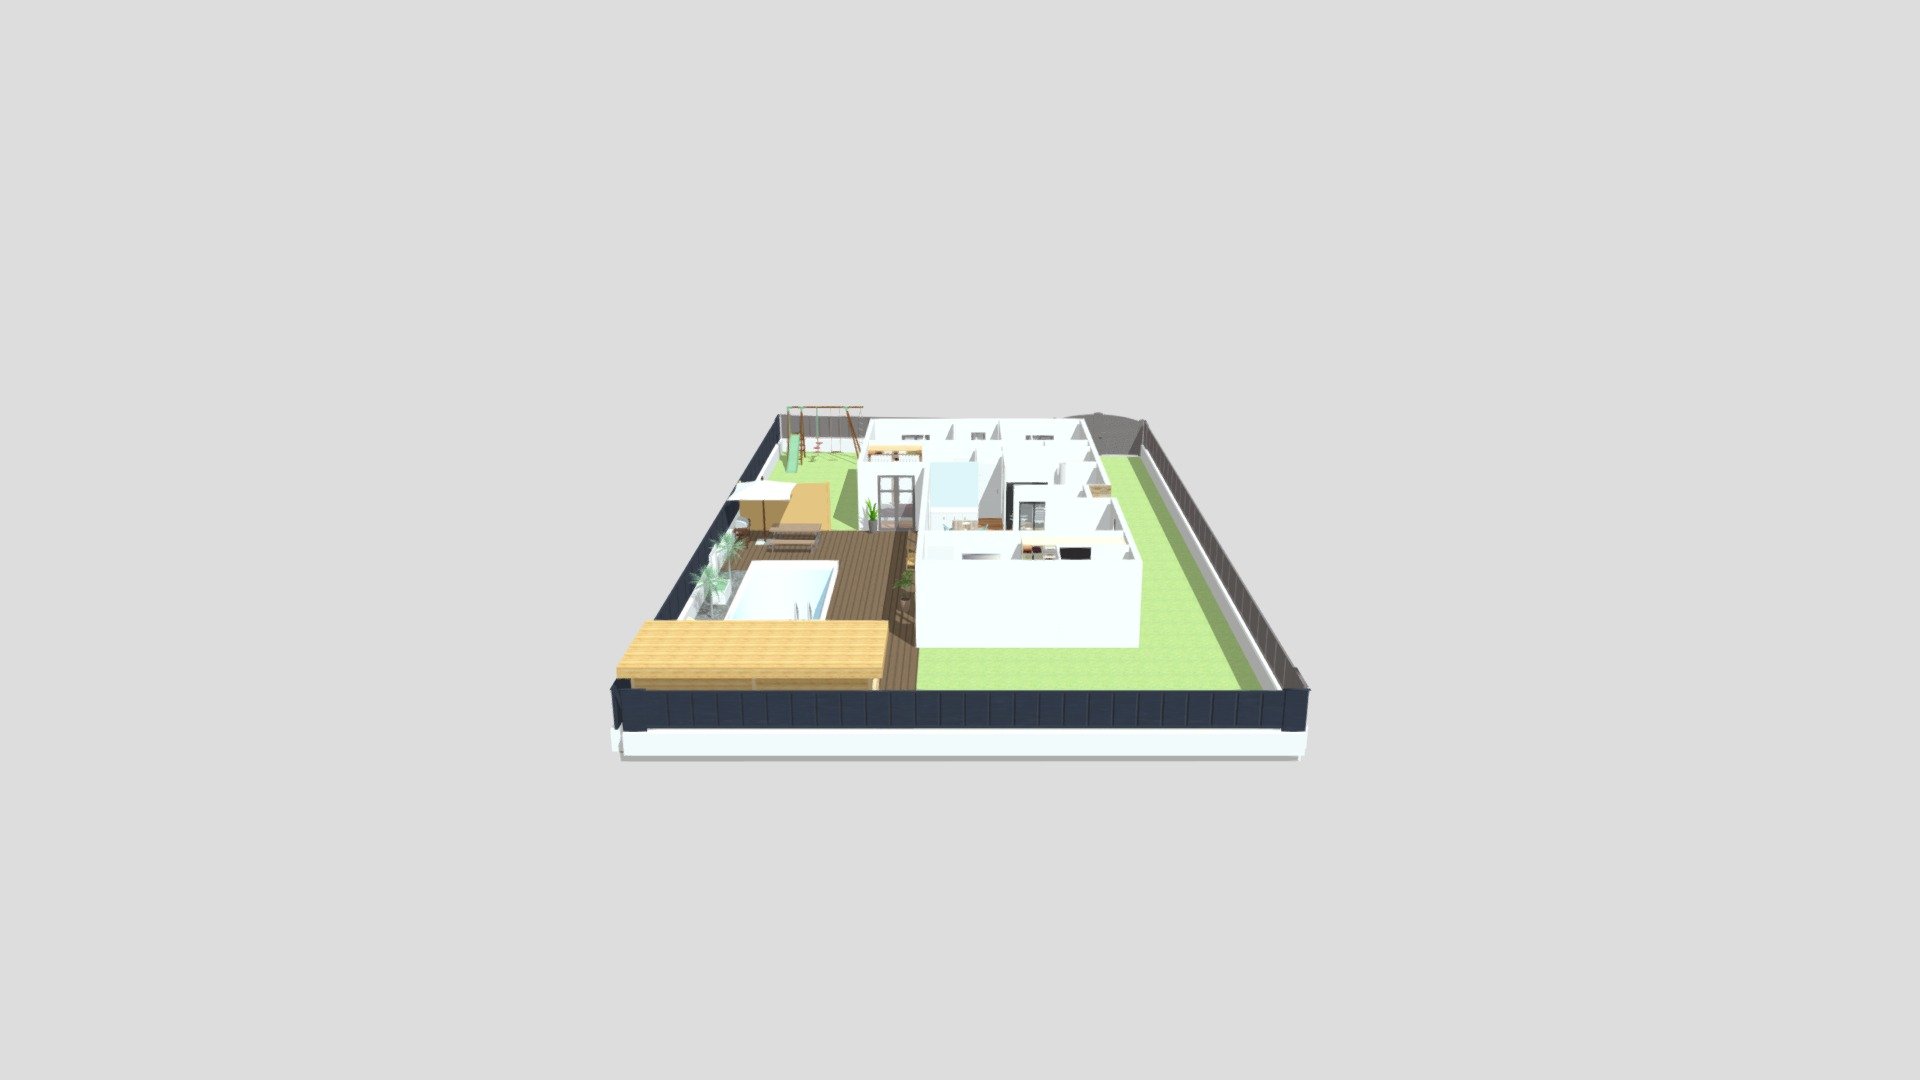 Maison familiale - Download Free 3D model by Home Design 3D ...